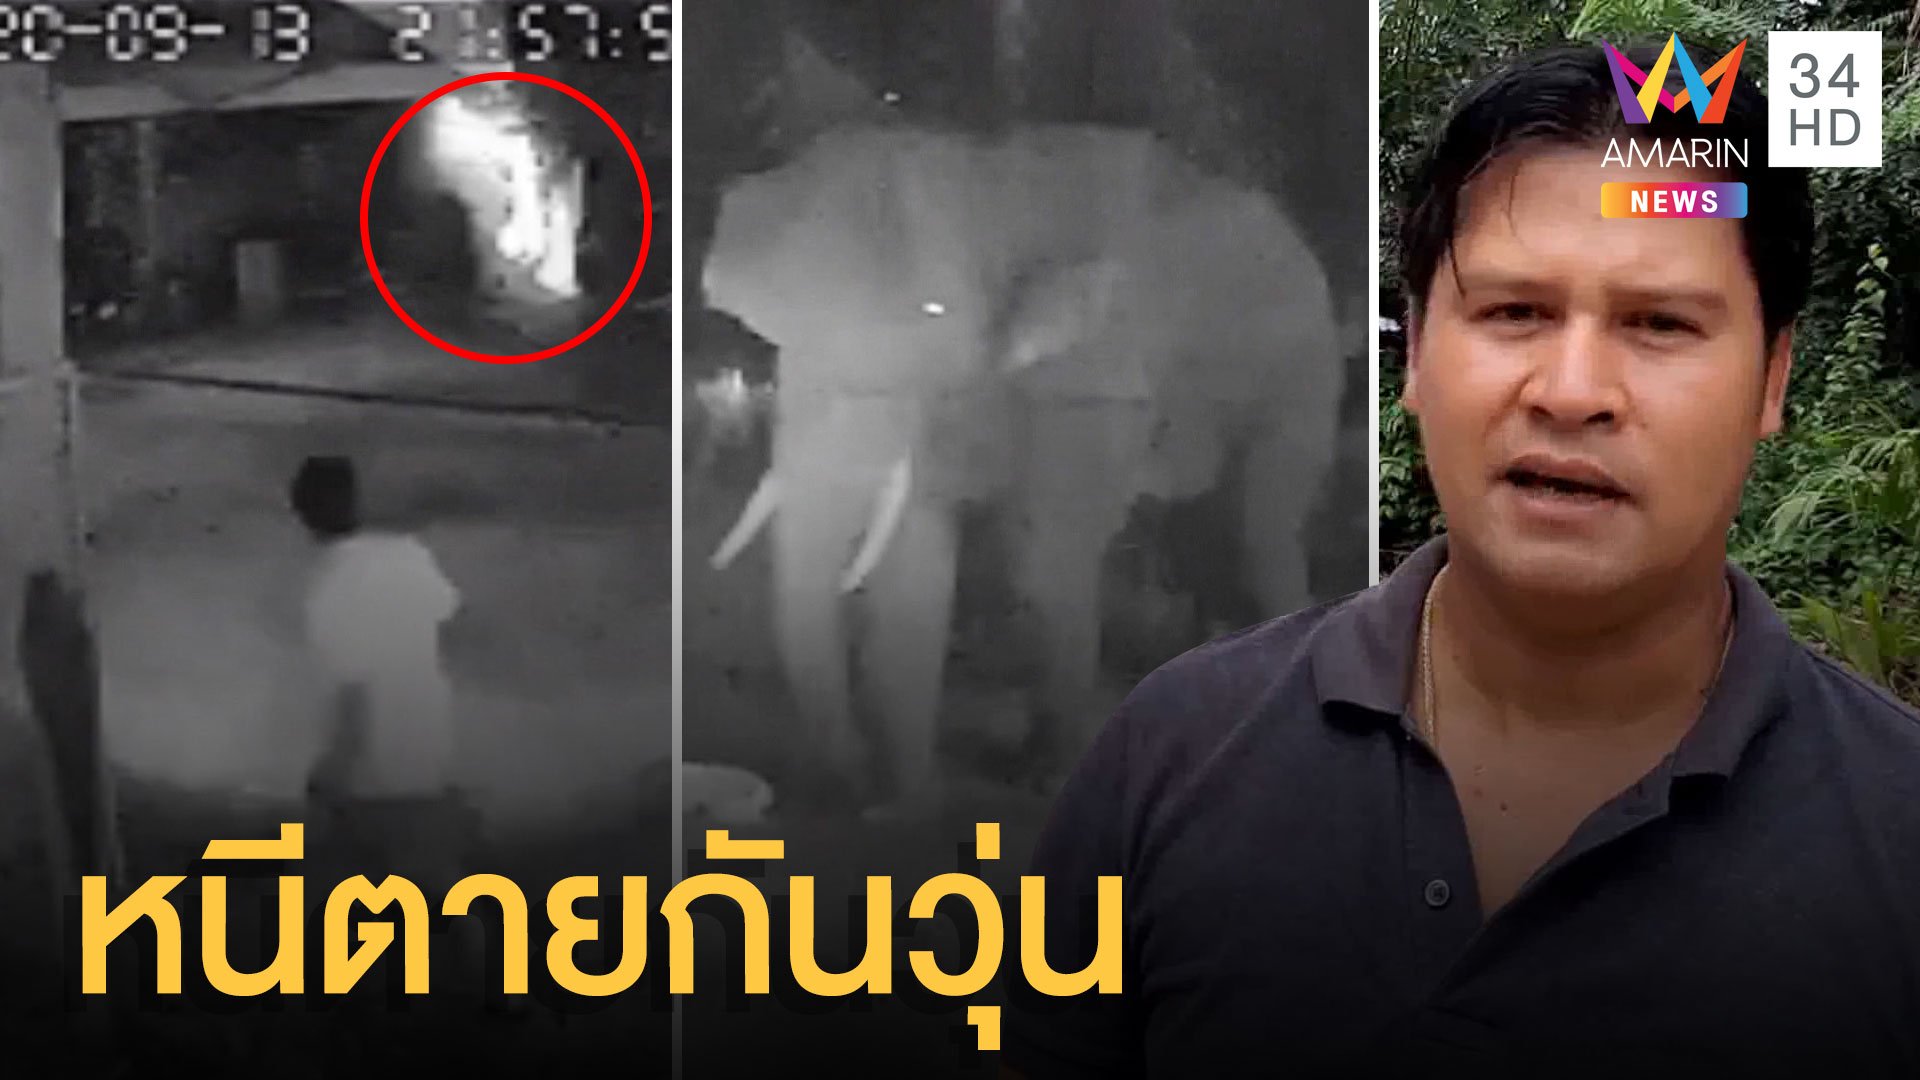 ชาวบ้านหนีตาย! ช้างป่าบุกบ้าน พังสวนเสียหายยับ | ข่าวเที่ยงอมรินทร์ | 15 ก.ย. 63 | AMARIN TVHD34